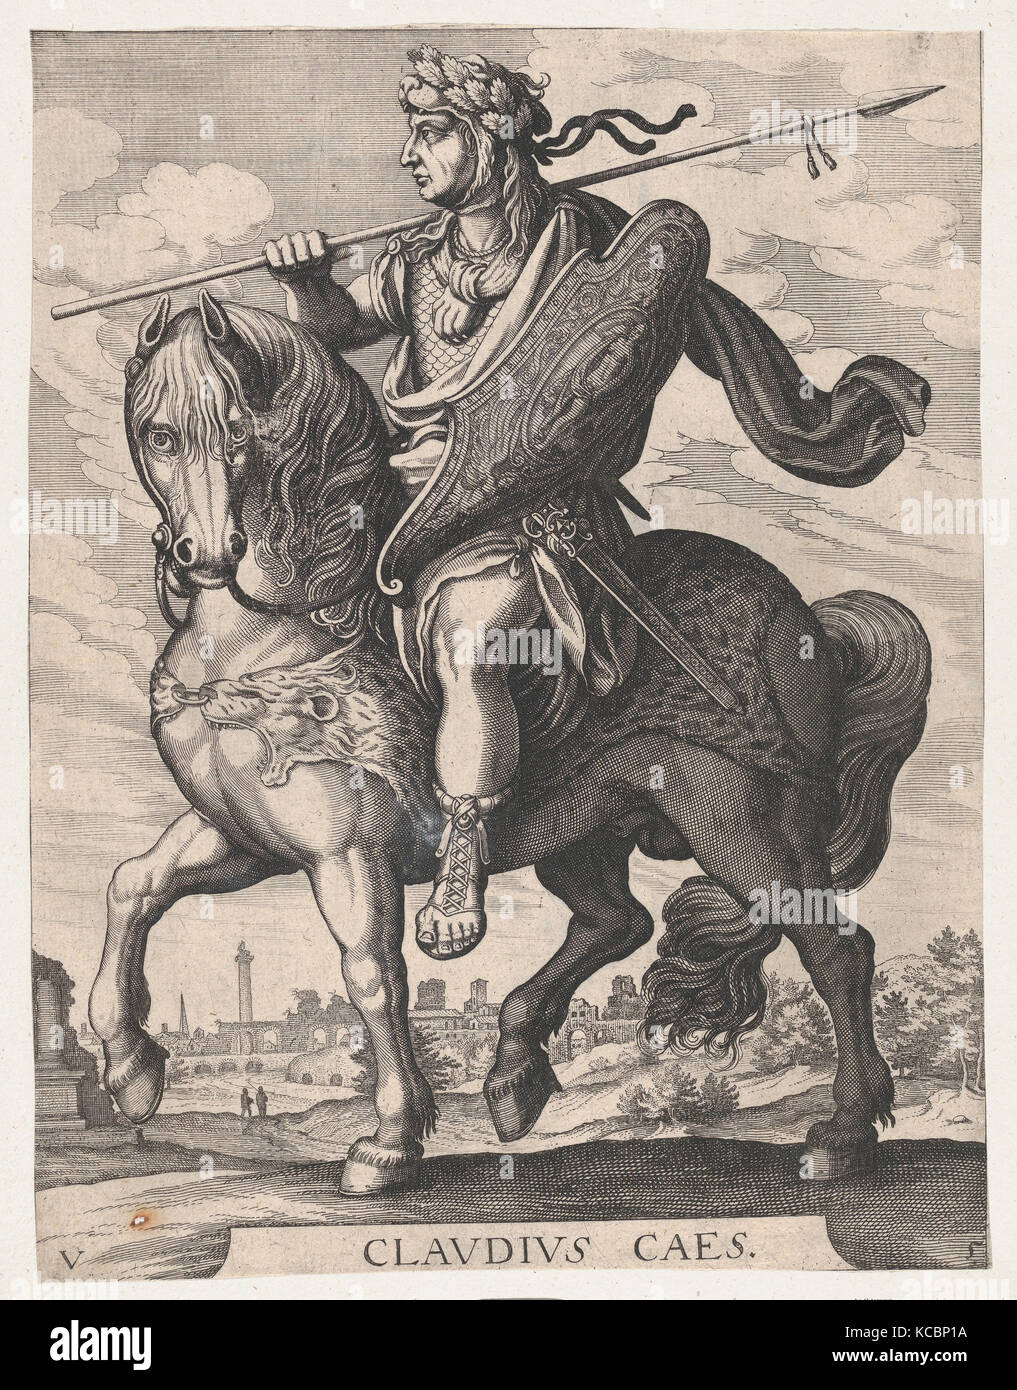 Planche 5 : l'empereur Claudius à cheval, de 'Les douze Césars Romains' après Tempesta, Matthäus Merian l'ancien, 1610-50 Banque D'Images